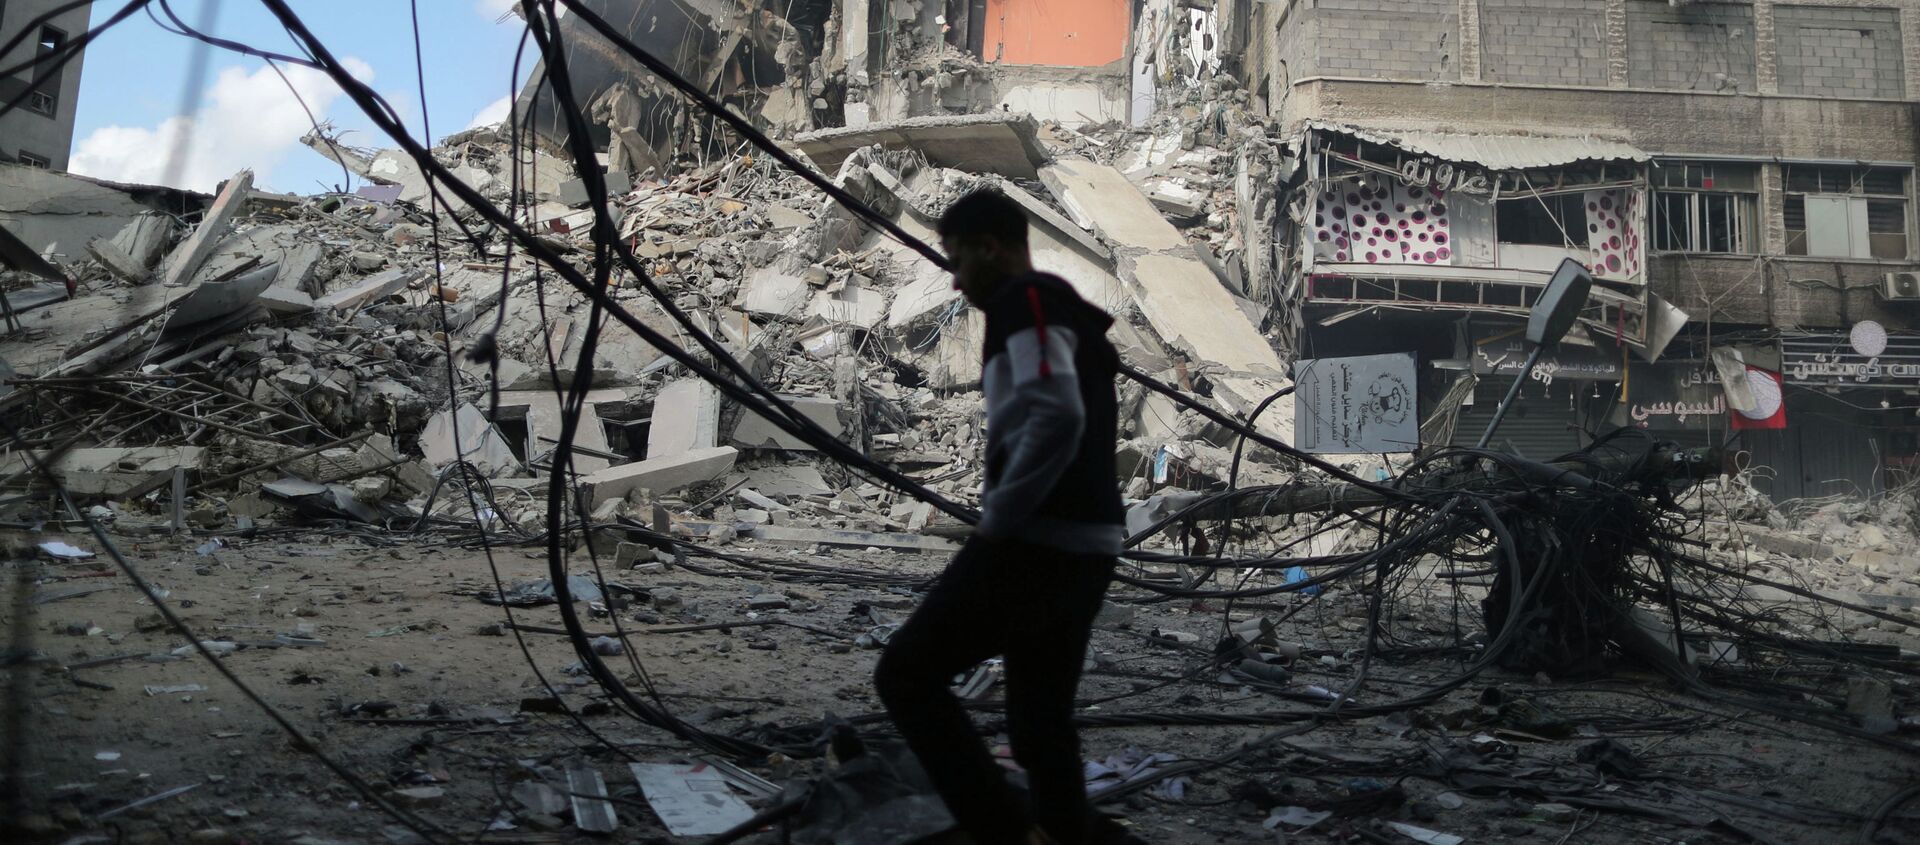 Палестинец проходит мимо разрушенных зданий в результате израильских воздушных ударов - Sputnik Кыргызстан, 1920, 14.05.2021